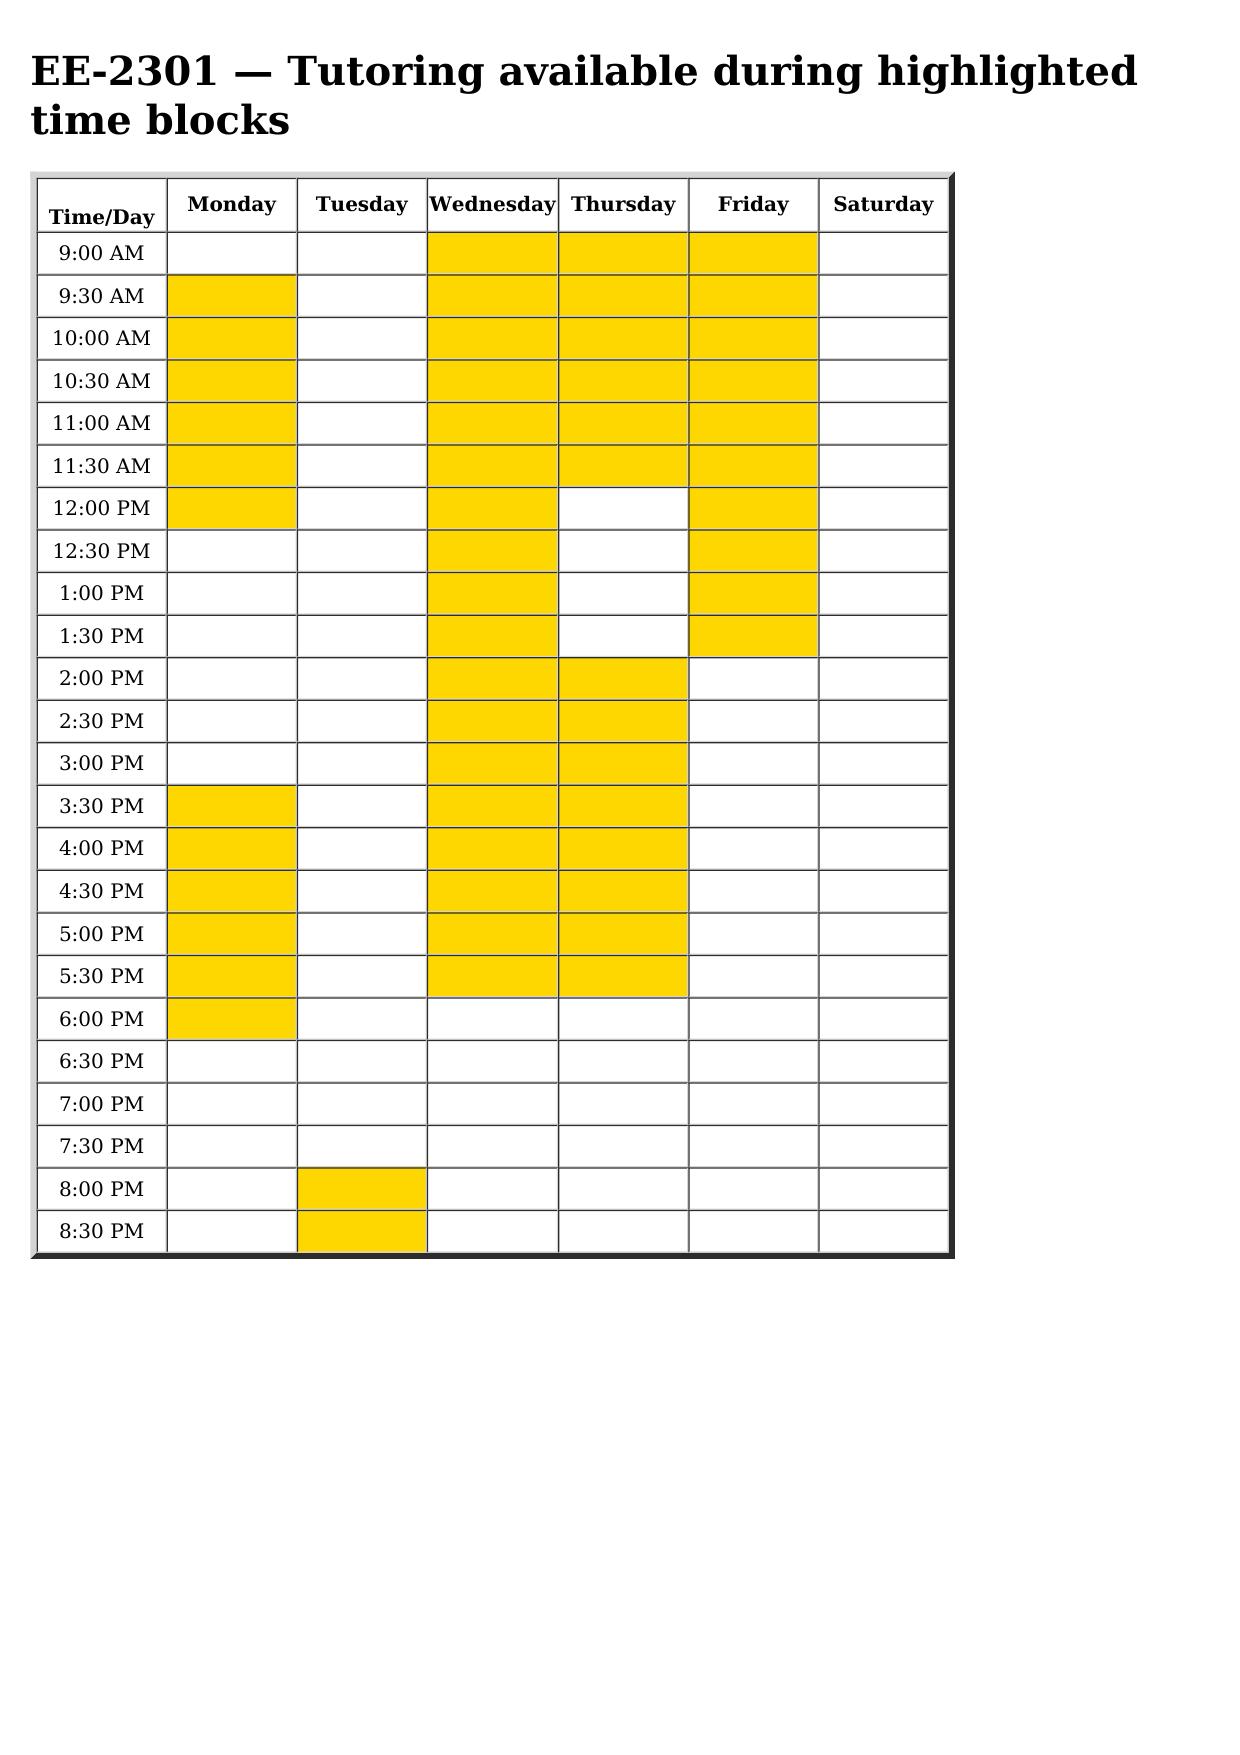 ee 2301 schedule